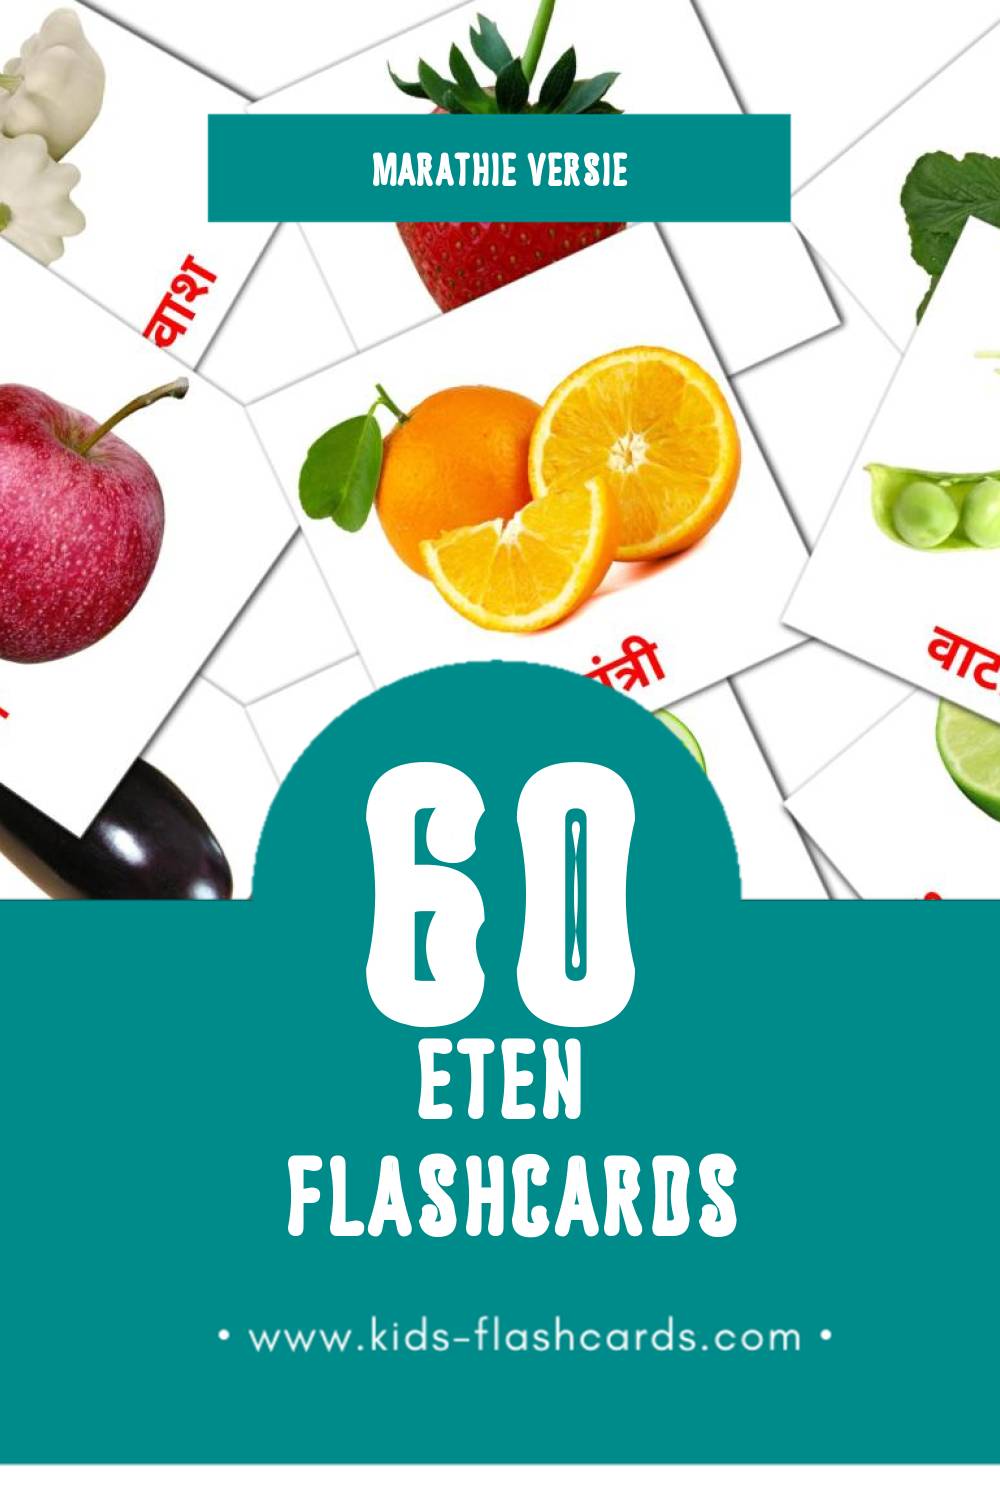 Visuele अन्न Flashcards voor Kleuters (60 kaarten in het Marathi)